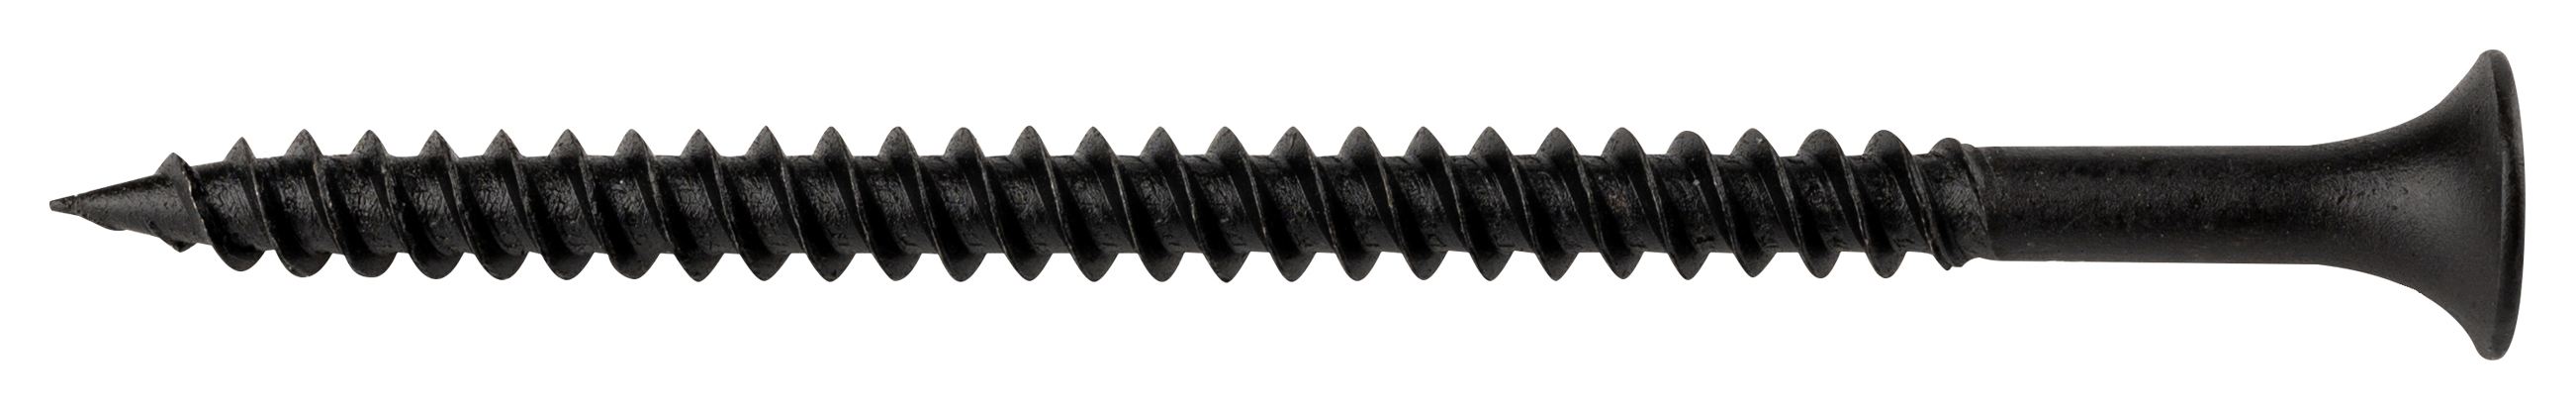 Wickes Fine Thread Black Phosphated Plasterboard Screws - 65mm - Pack of 500